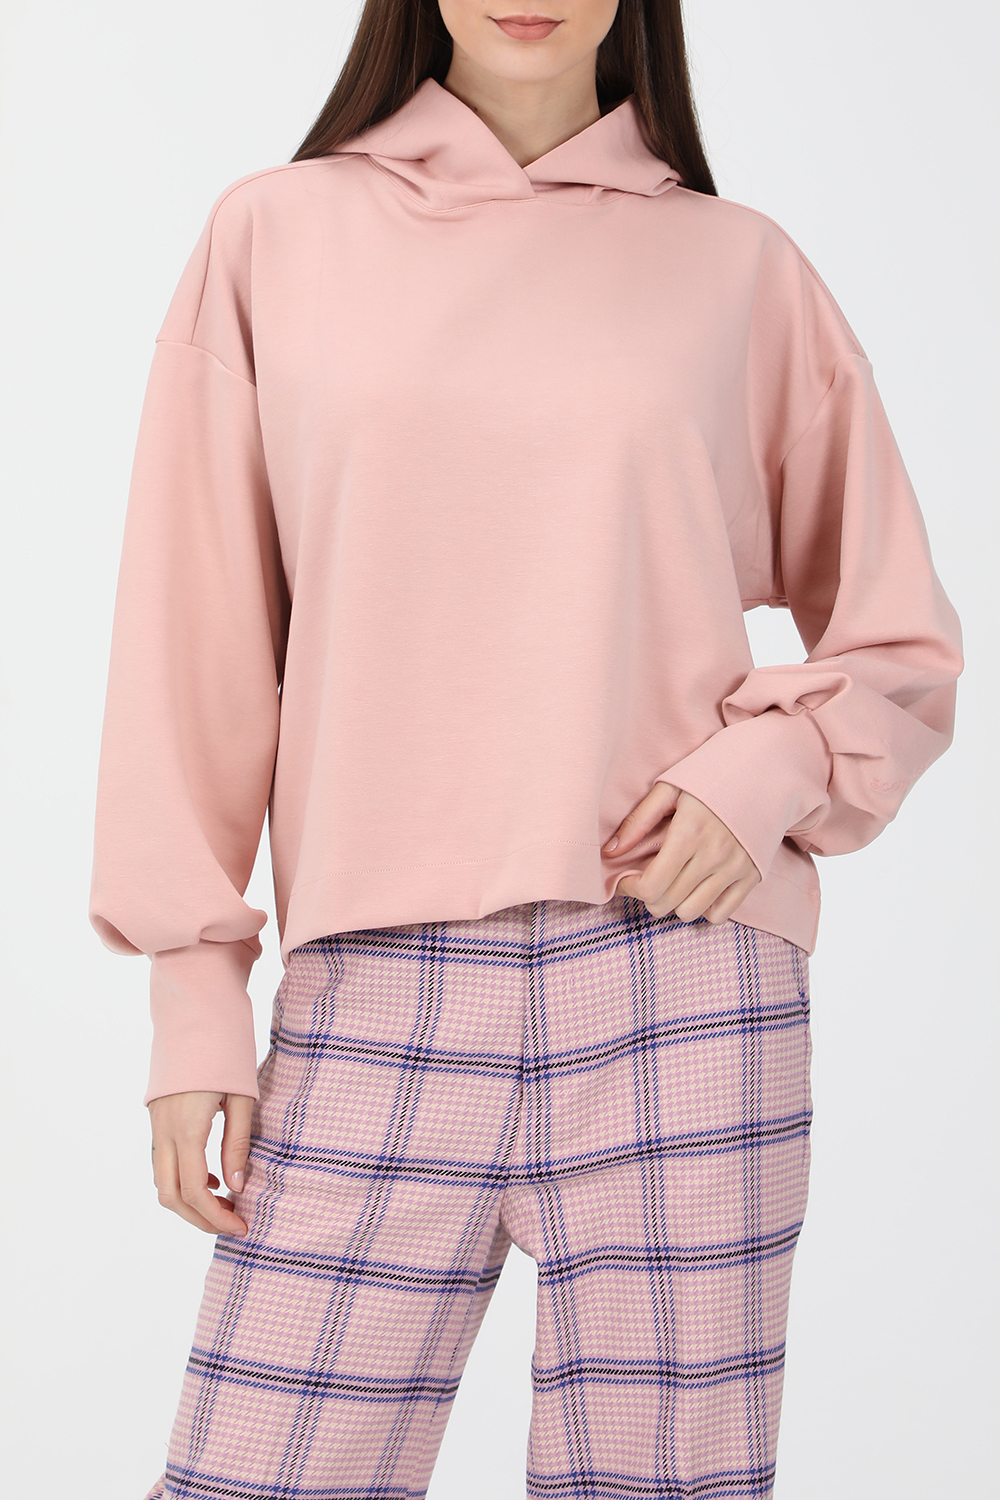 Γυναικεία/Ρούχα/Φούτερ/Μπλούζες SCOTCH & SODA - Γυναικεία φούτερ μπλούζα SCOTCH & SODA ροζ